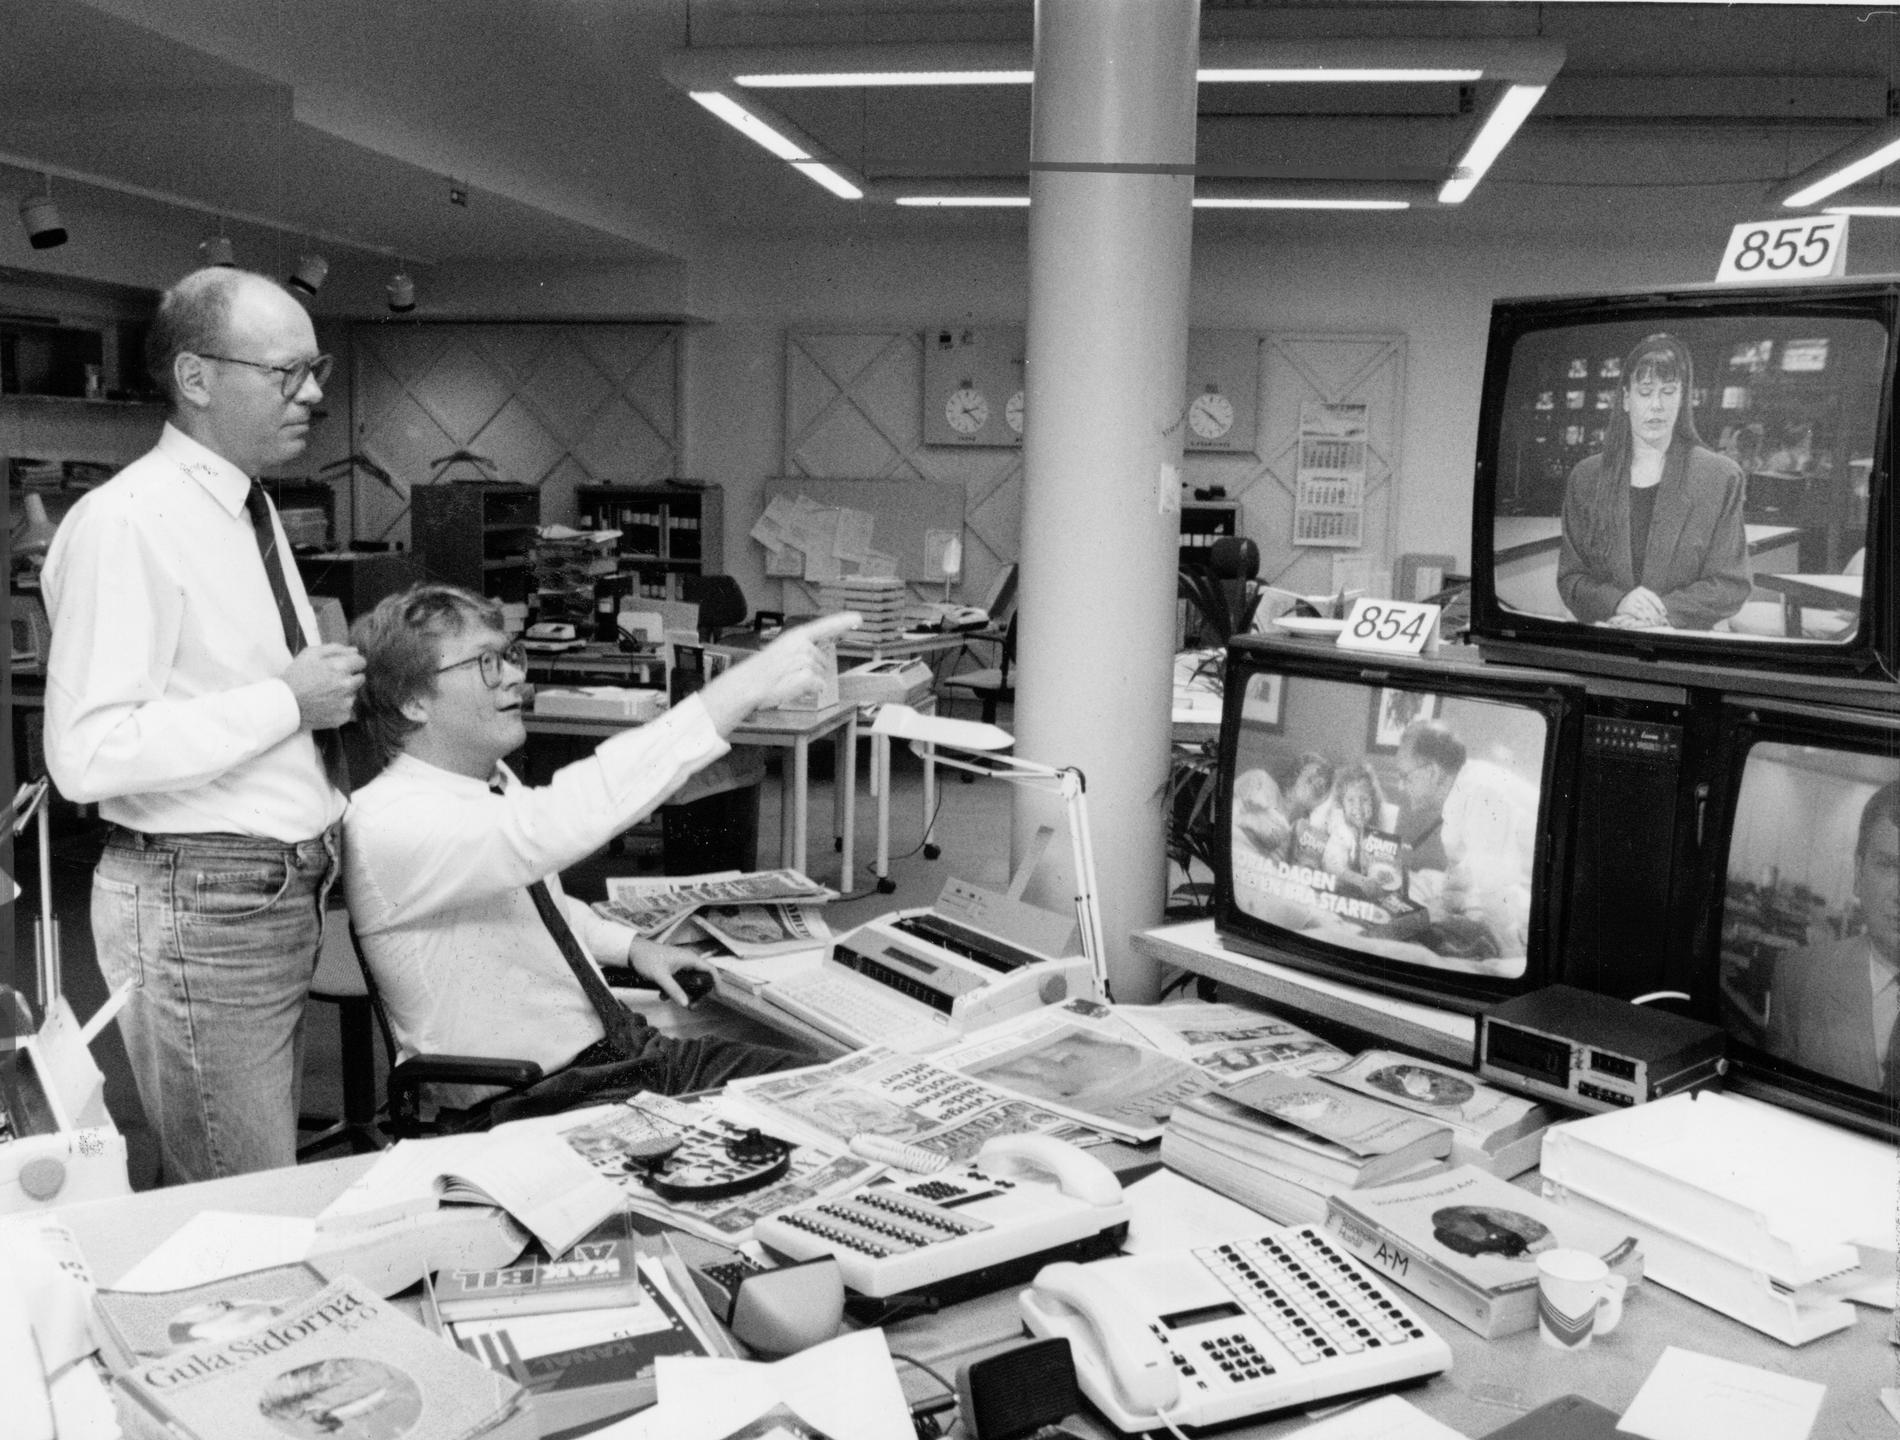 ”Aktuellt” i SVT:s Mats Hådell och Lars Adaktusson ser premiärsändningen av nyheterna på TV4 1990 och ger Lotta Mossberg beröm. 